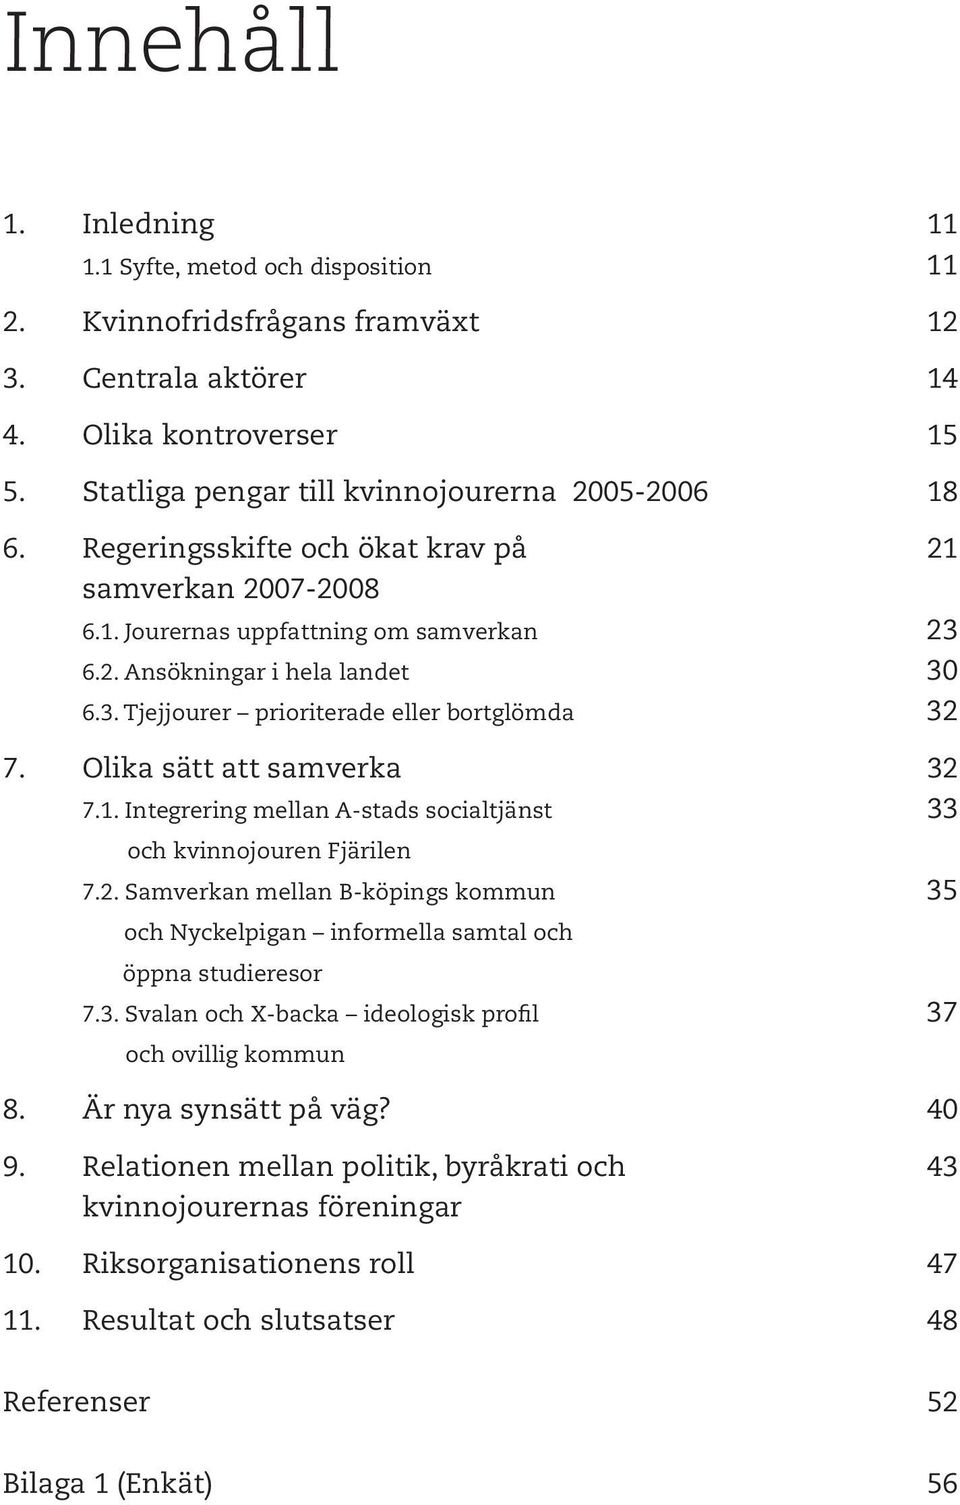 Olika sätt att samverka 32 7.1. Integrering mellan A-stads socialtjänst 33 och kvinnojouren Fjärilen 7.2. Samverkan mellan B-köpings kommun 35 och Nyckelpigan informella samtal och öppna studieresor 7.